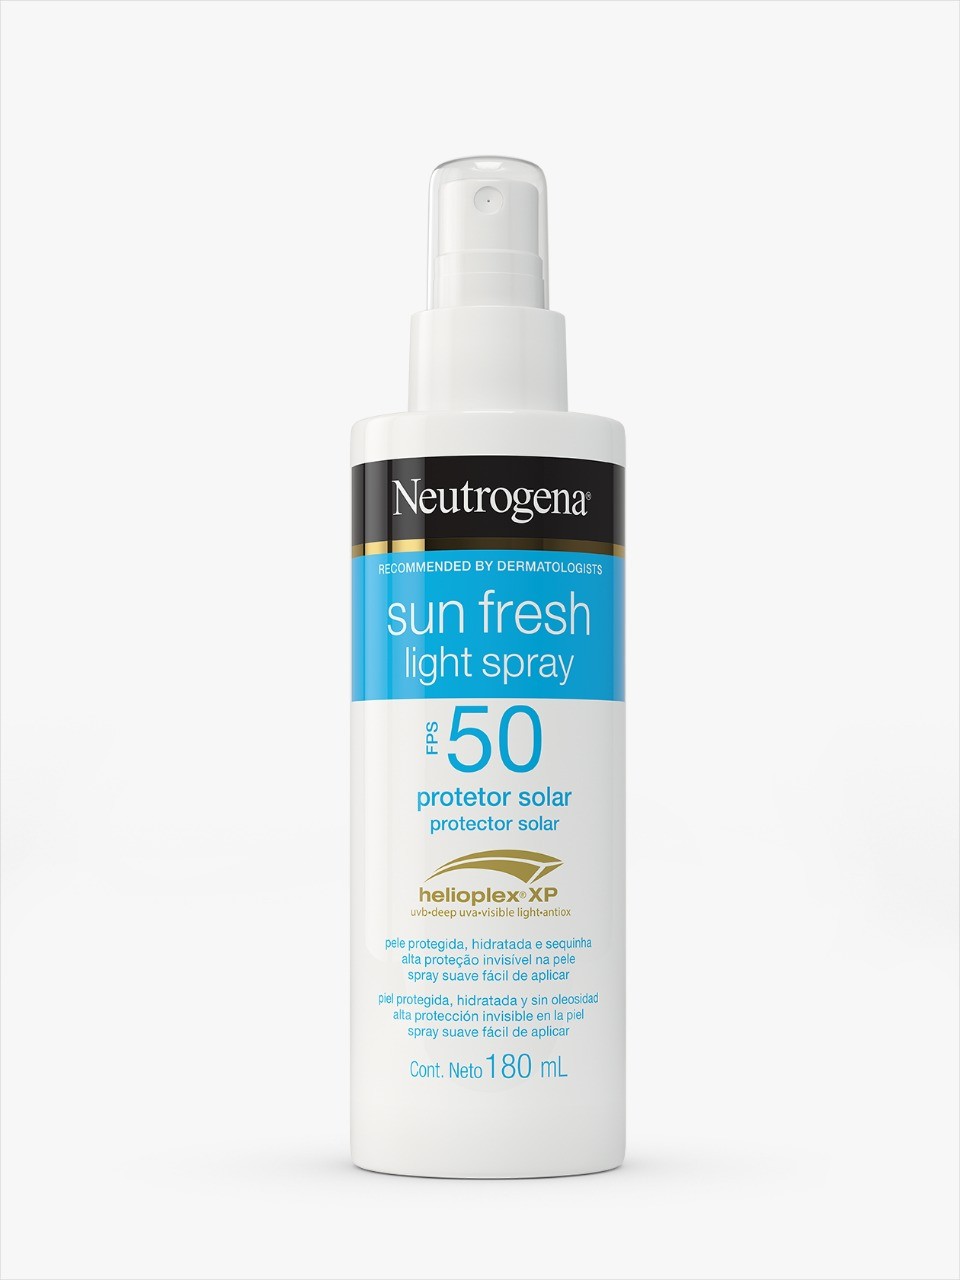 Sun Fresh Light Spray, FPS 50, Neutrogena, R$ 76,90 (180 ml): textura leve, toque seco (Foto: Divulgação)